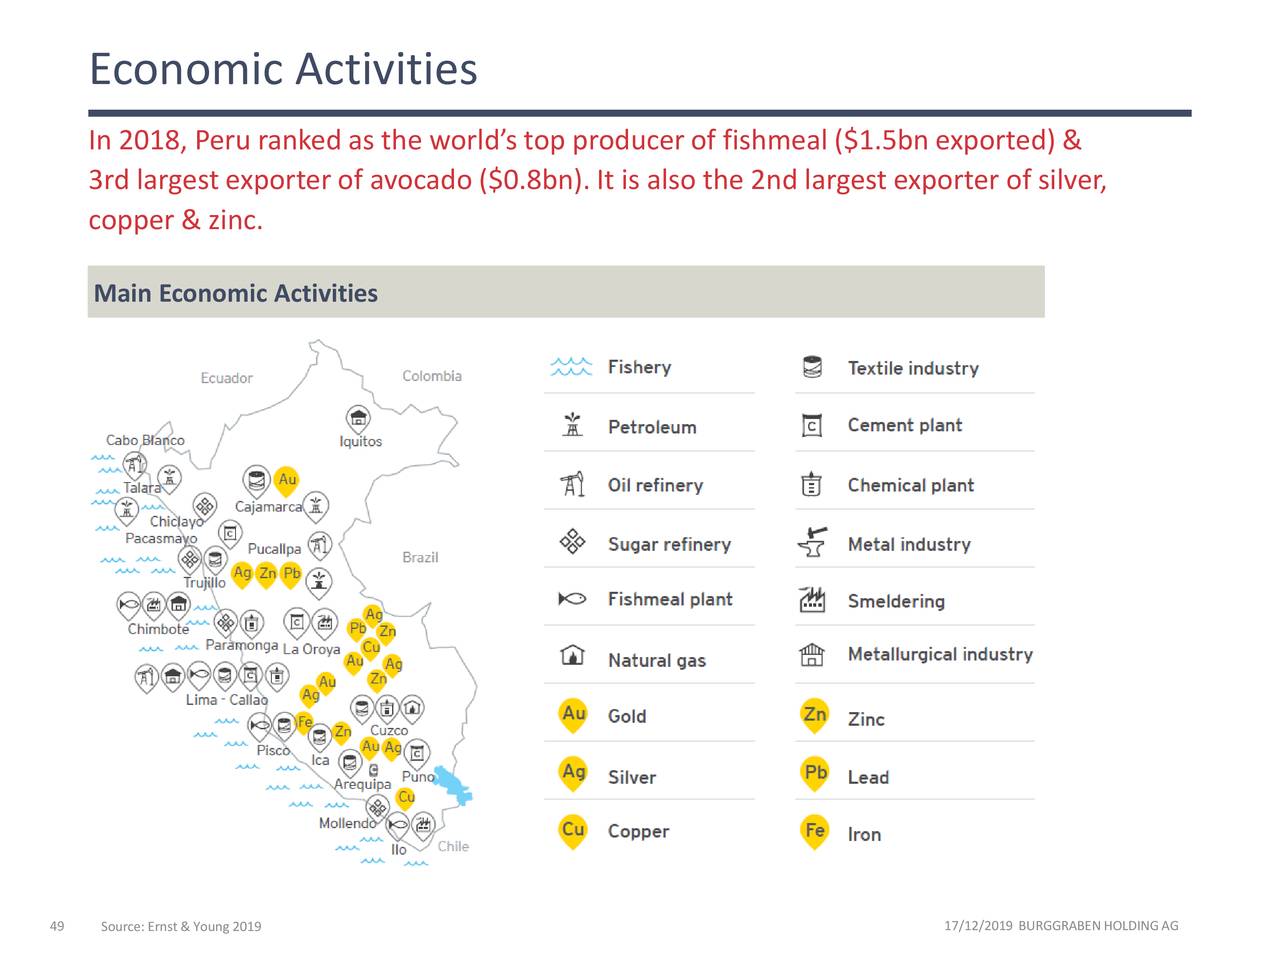 Economic Activities